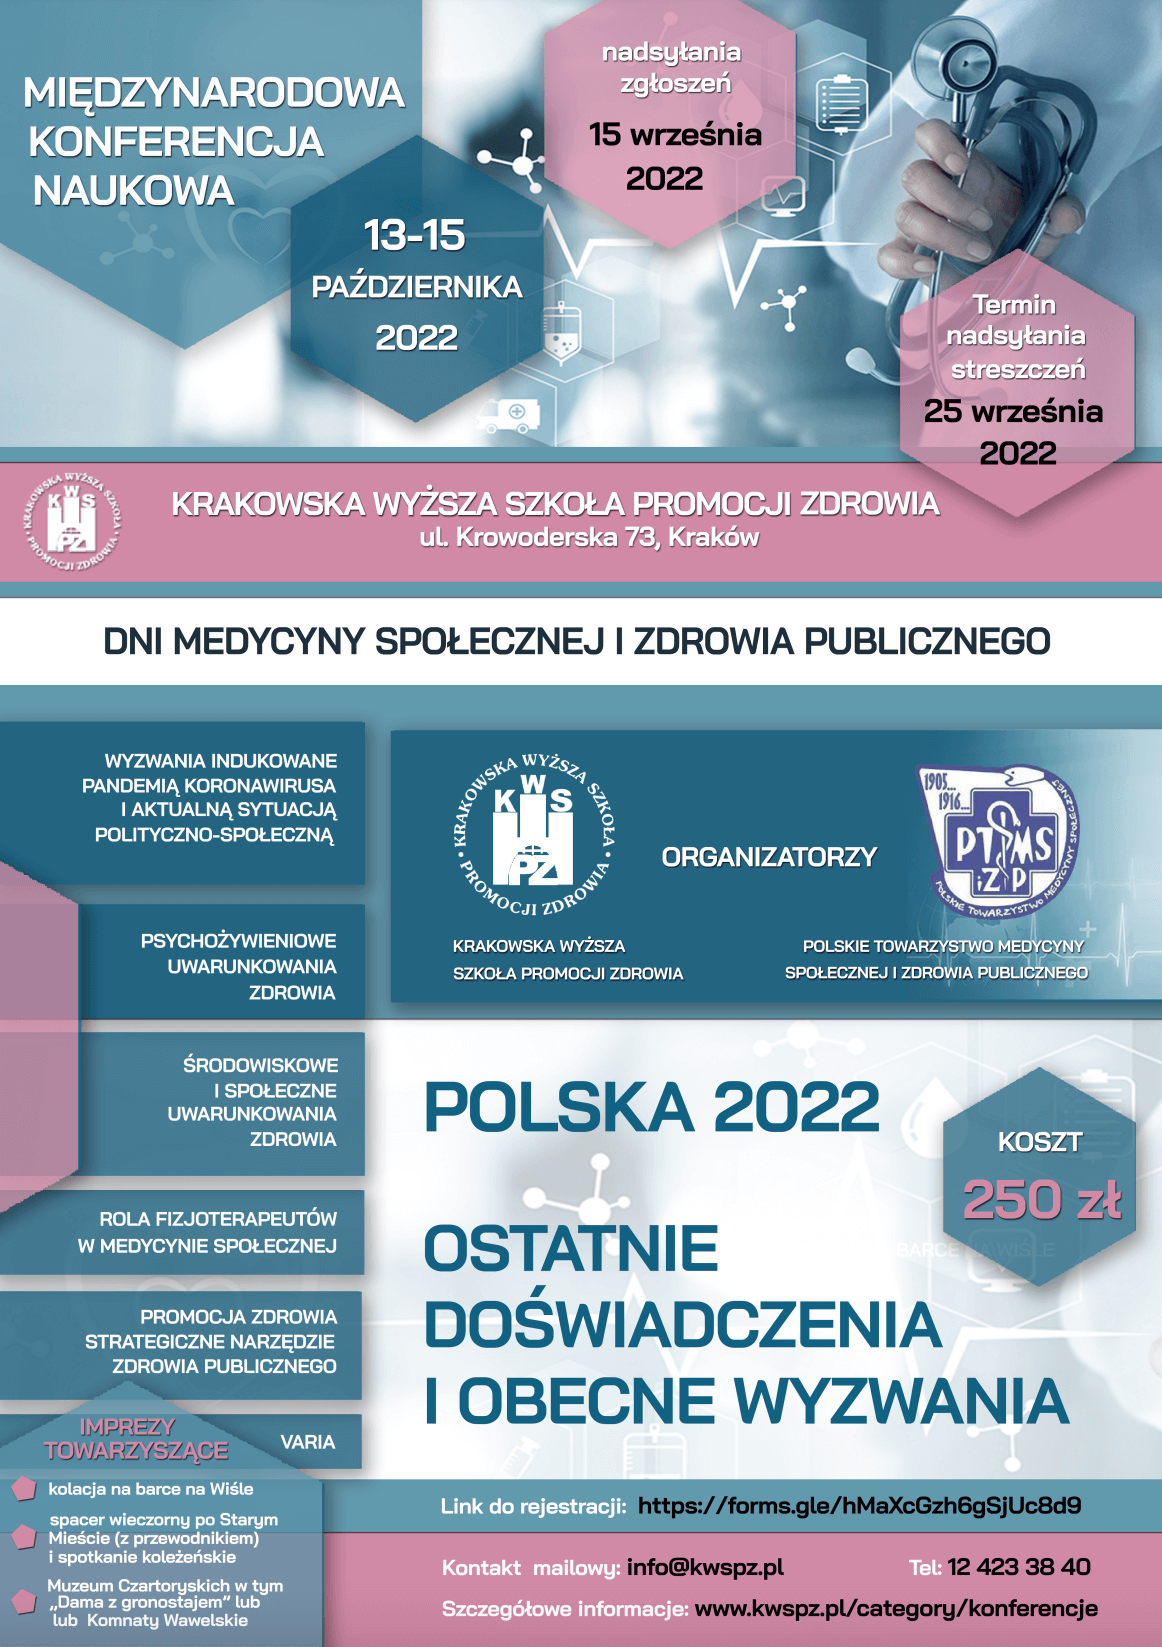 Plakat Międzynarodowej Konferencji Naukowej Dni Medycyny Społecznej i Zdrowia Publicznego Polska 2022